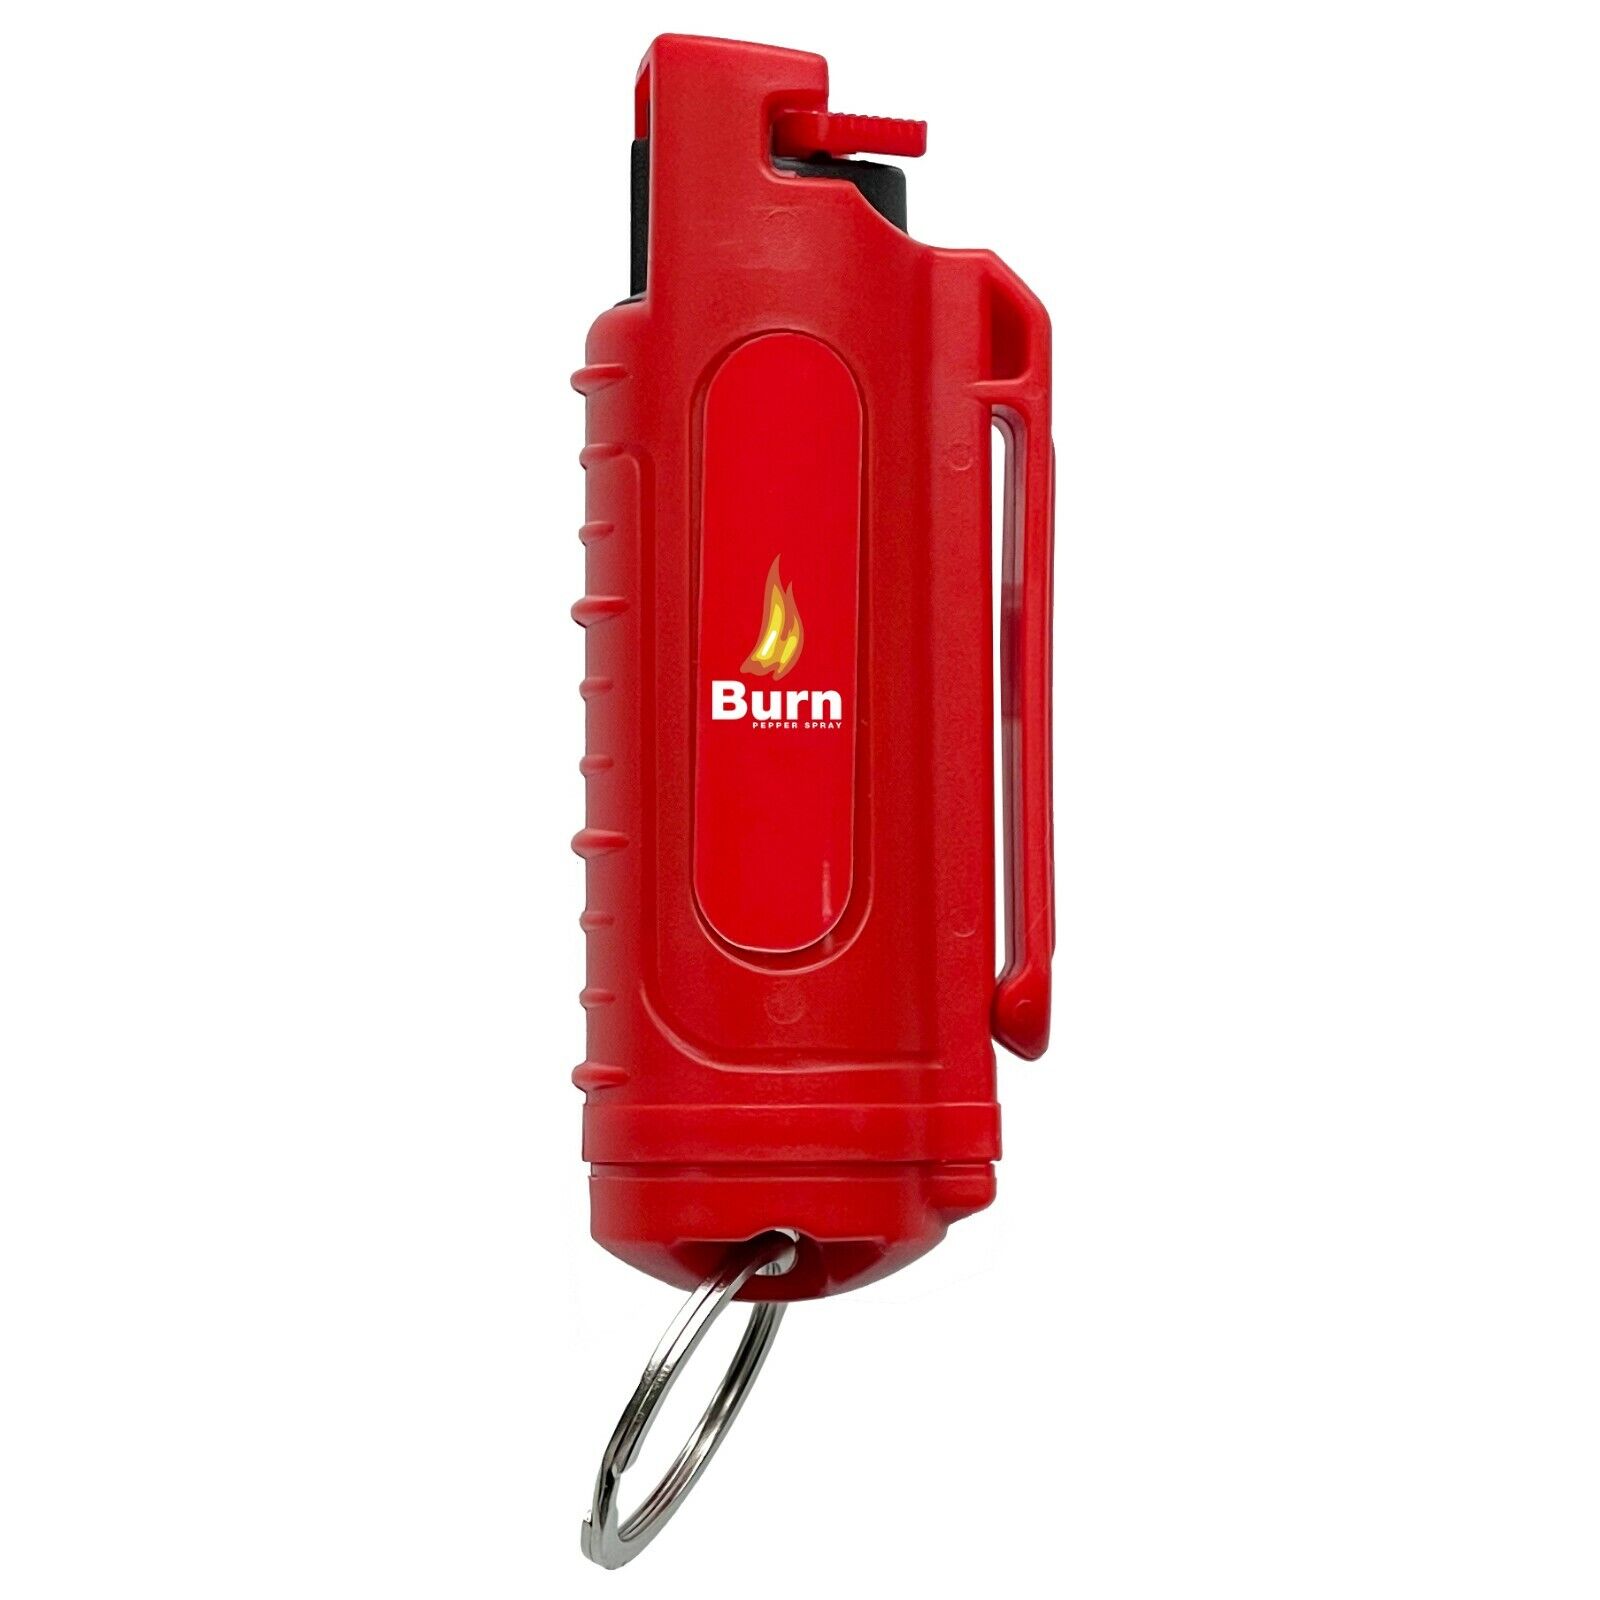 BURN Pepper Spray .50oz Keychain Self Defense Security Case Molded Red - 2 PACK  Burn - фотография #2